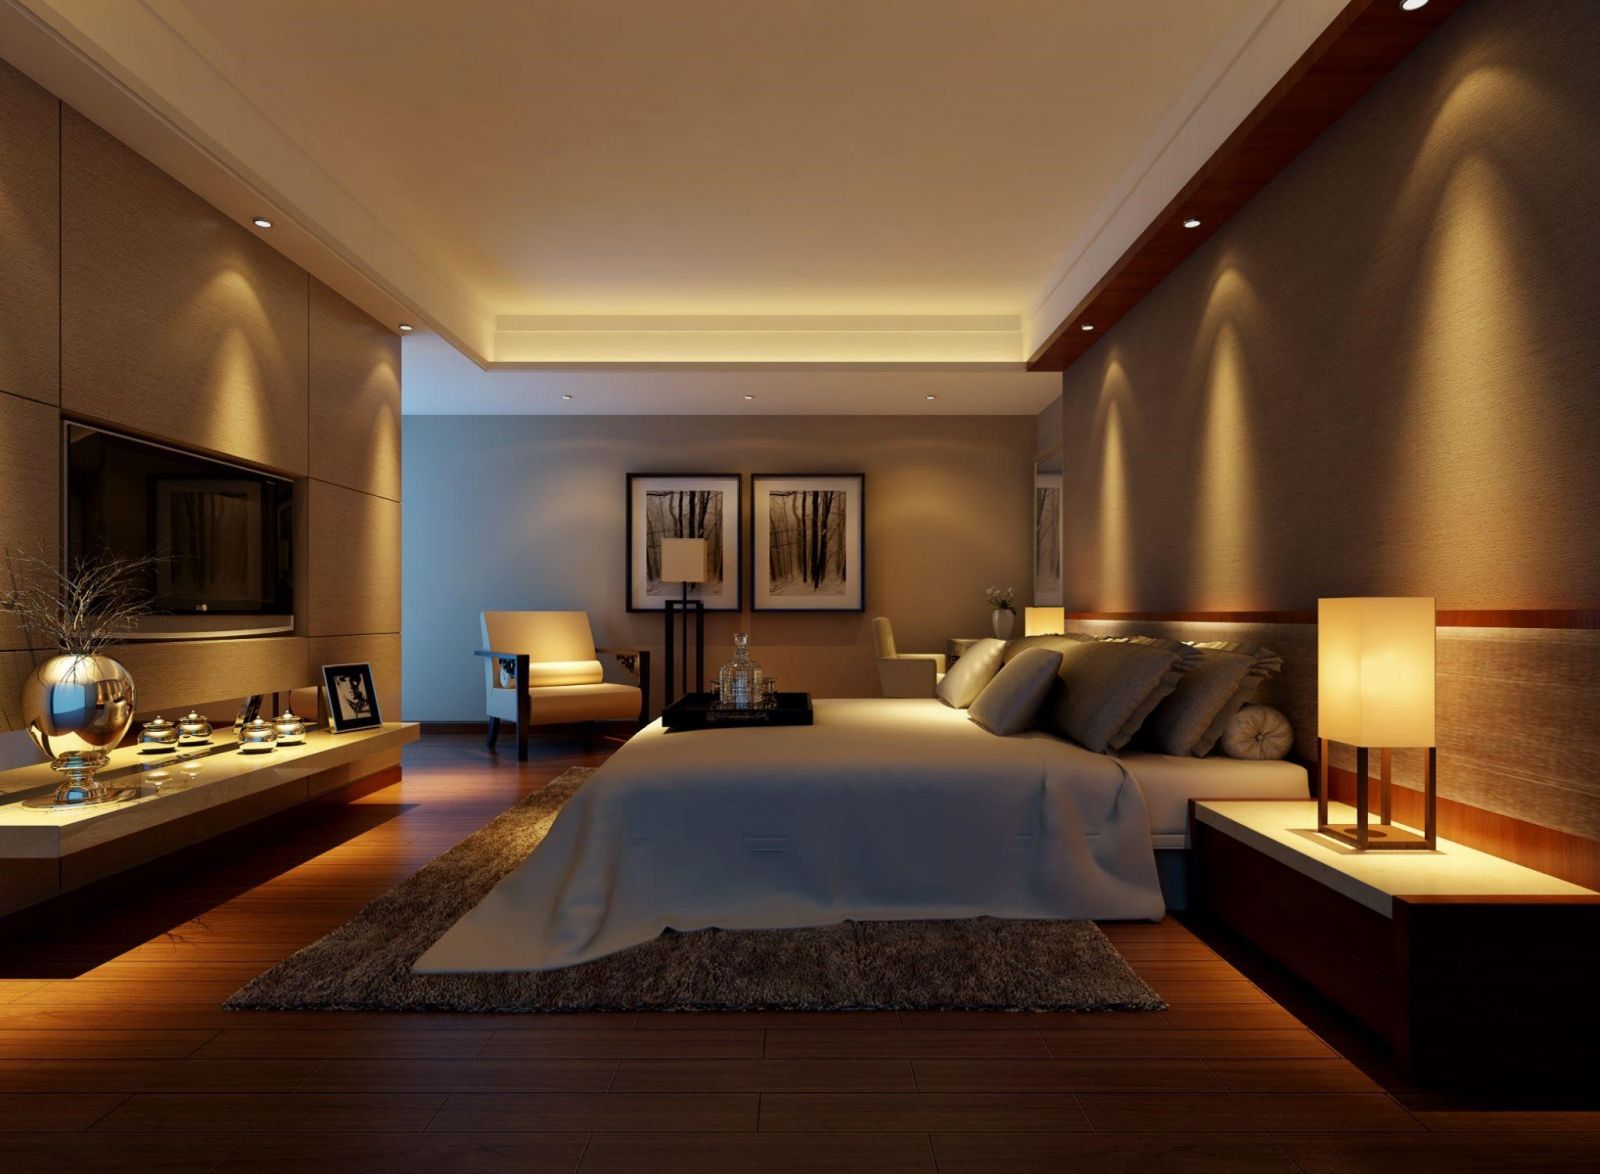 Trần thạch cao phòng ngủ hiện đại 2024 mang đến cho bạn không gian sống nhanh nhạy, thông minh và tối ưu hóa, giúp bạn có một giấc ngủ sâu và thoải mái hơn. Hãy chiêm ngưỡng những hình ảnh đầy ấn tượng về trần thạch cao phòng ngủ hiện đại này!